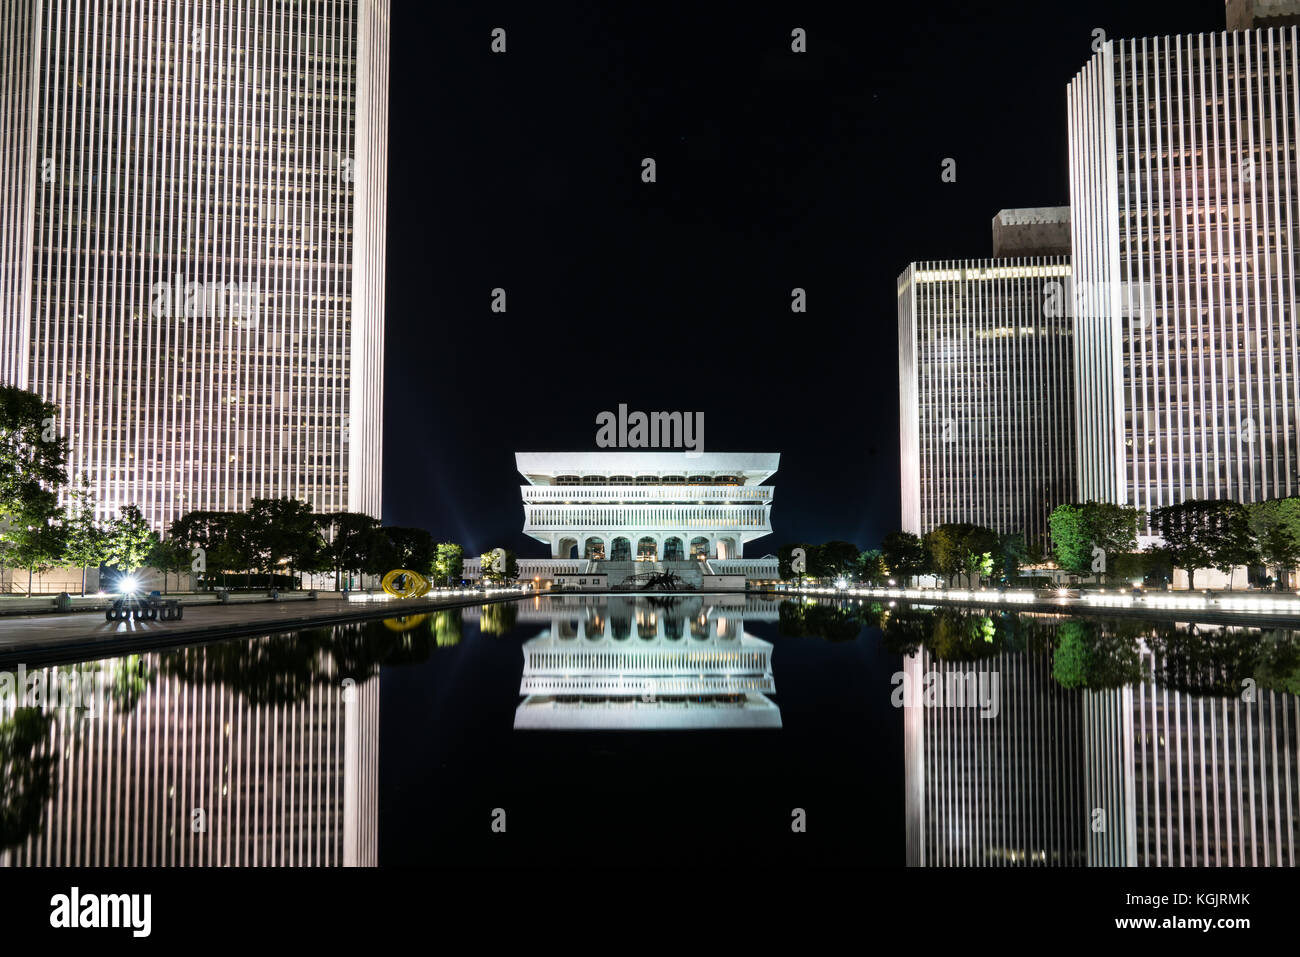 Albany, NY - 28 juin : reflet de New York State Museum sur l'empire state plaza de nuit le 28 juin, 2017 Banque D'Images